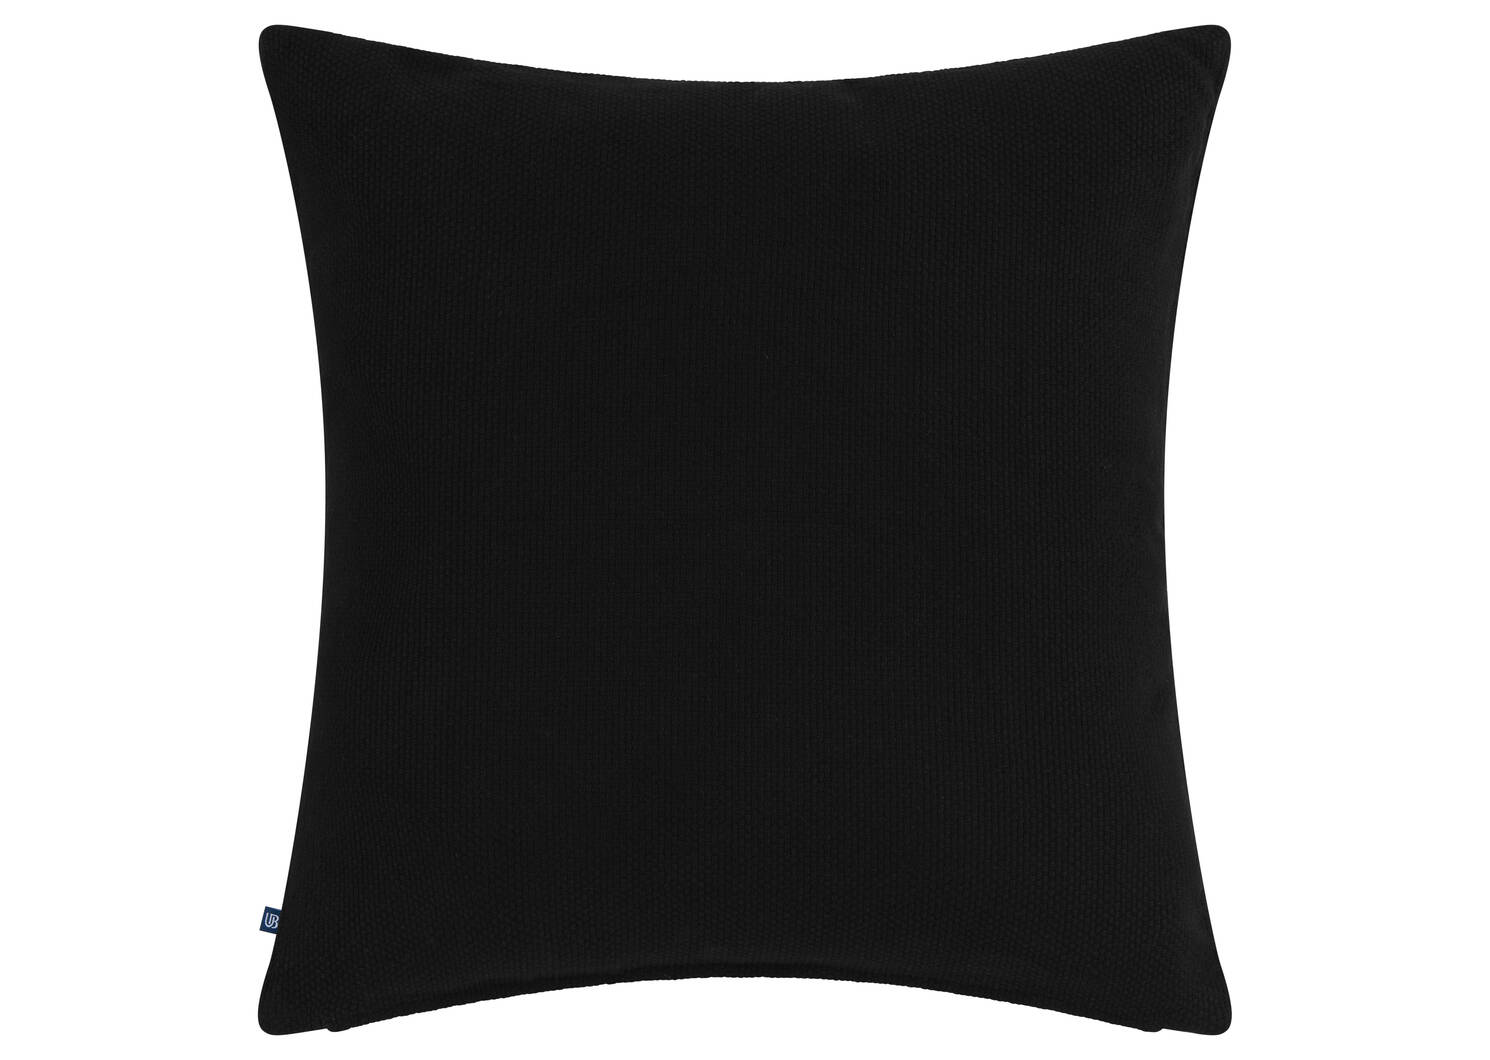 Flo Cotton Pillow 20x20 Black/Ivory